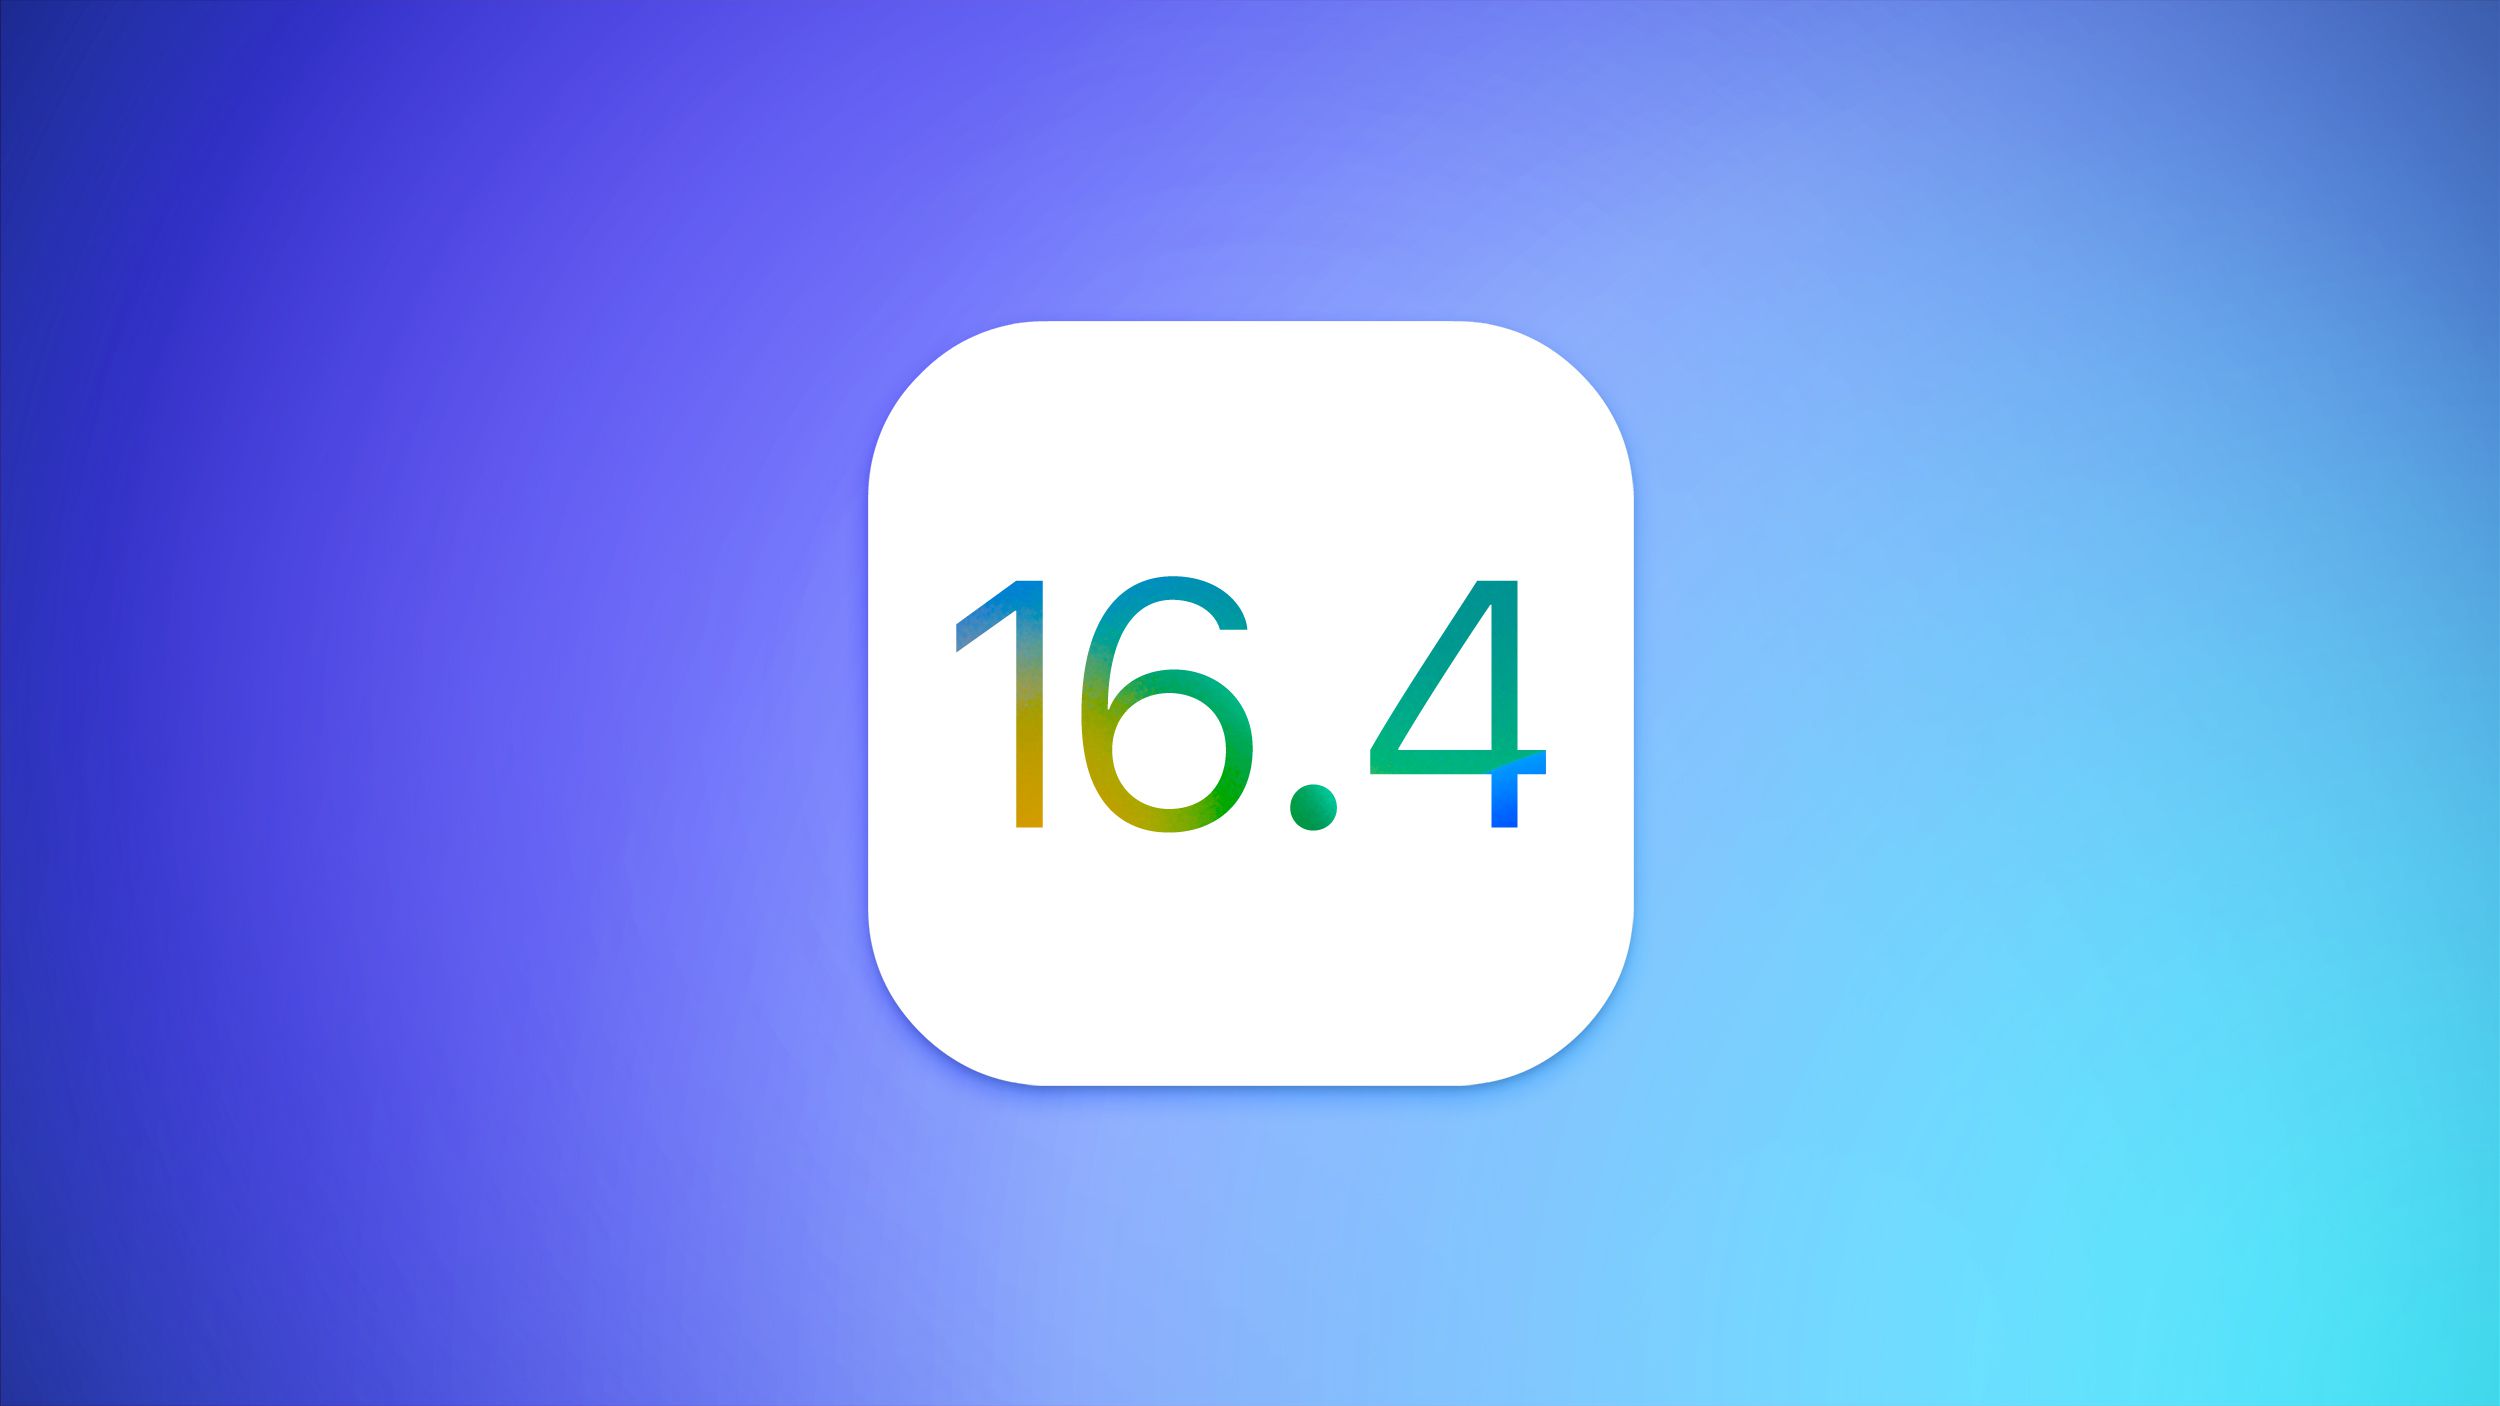 Apple veröffentlicht iOS 16.4: Was ist neu und wann ist die Firmware zu erwarten?